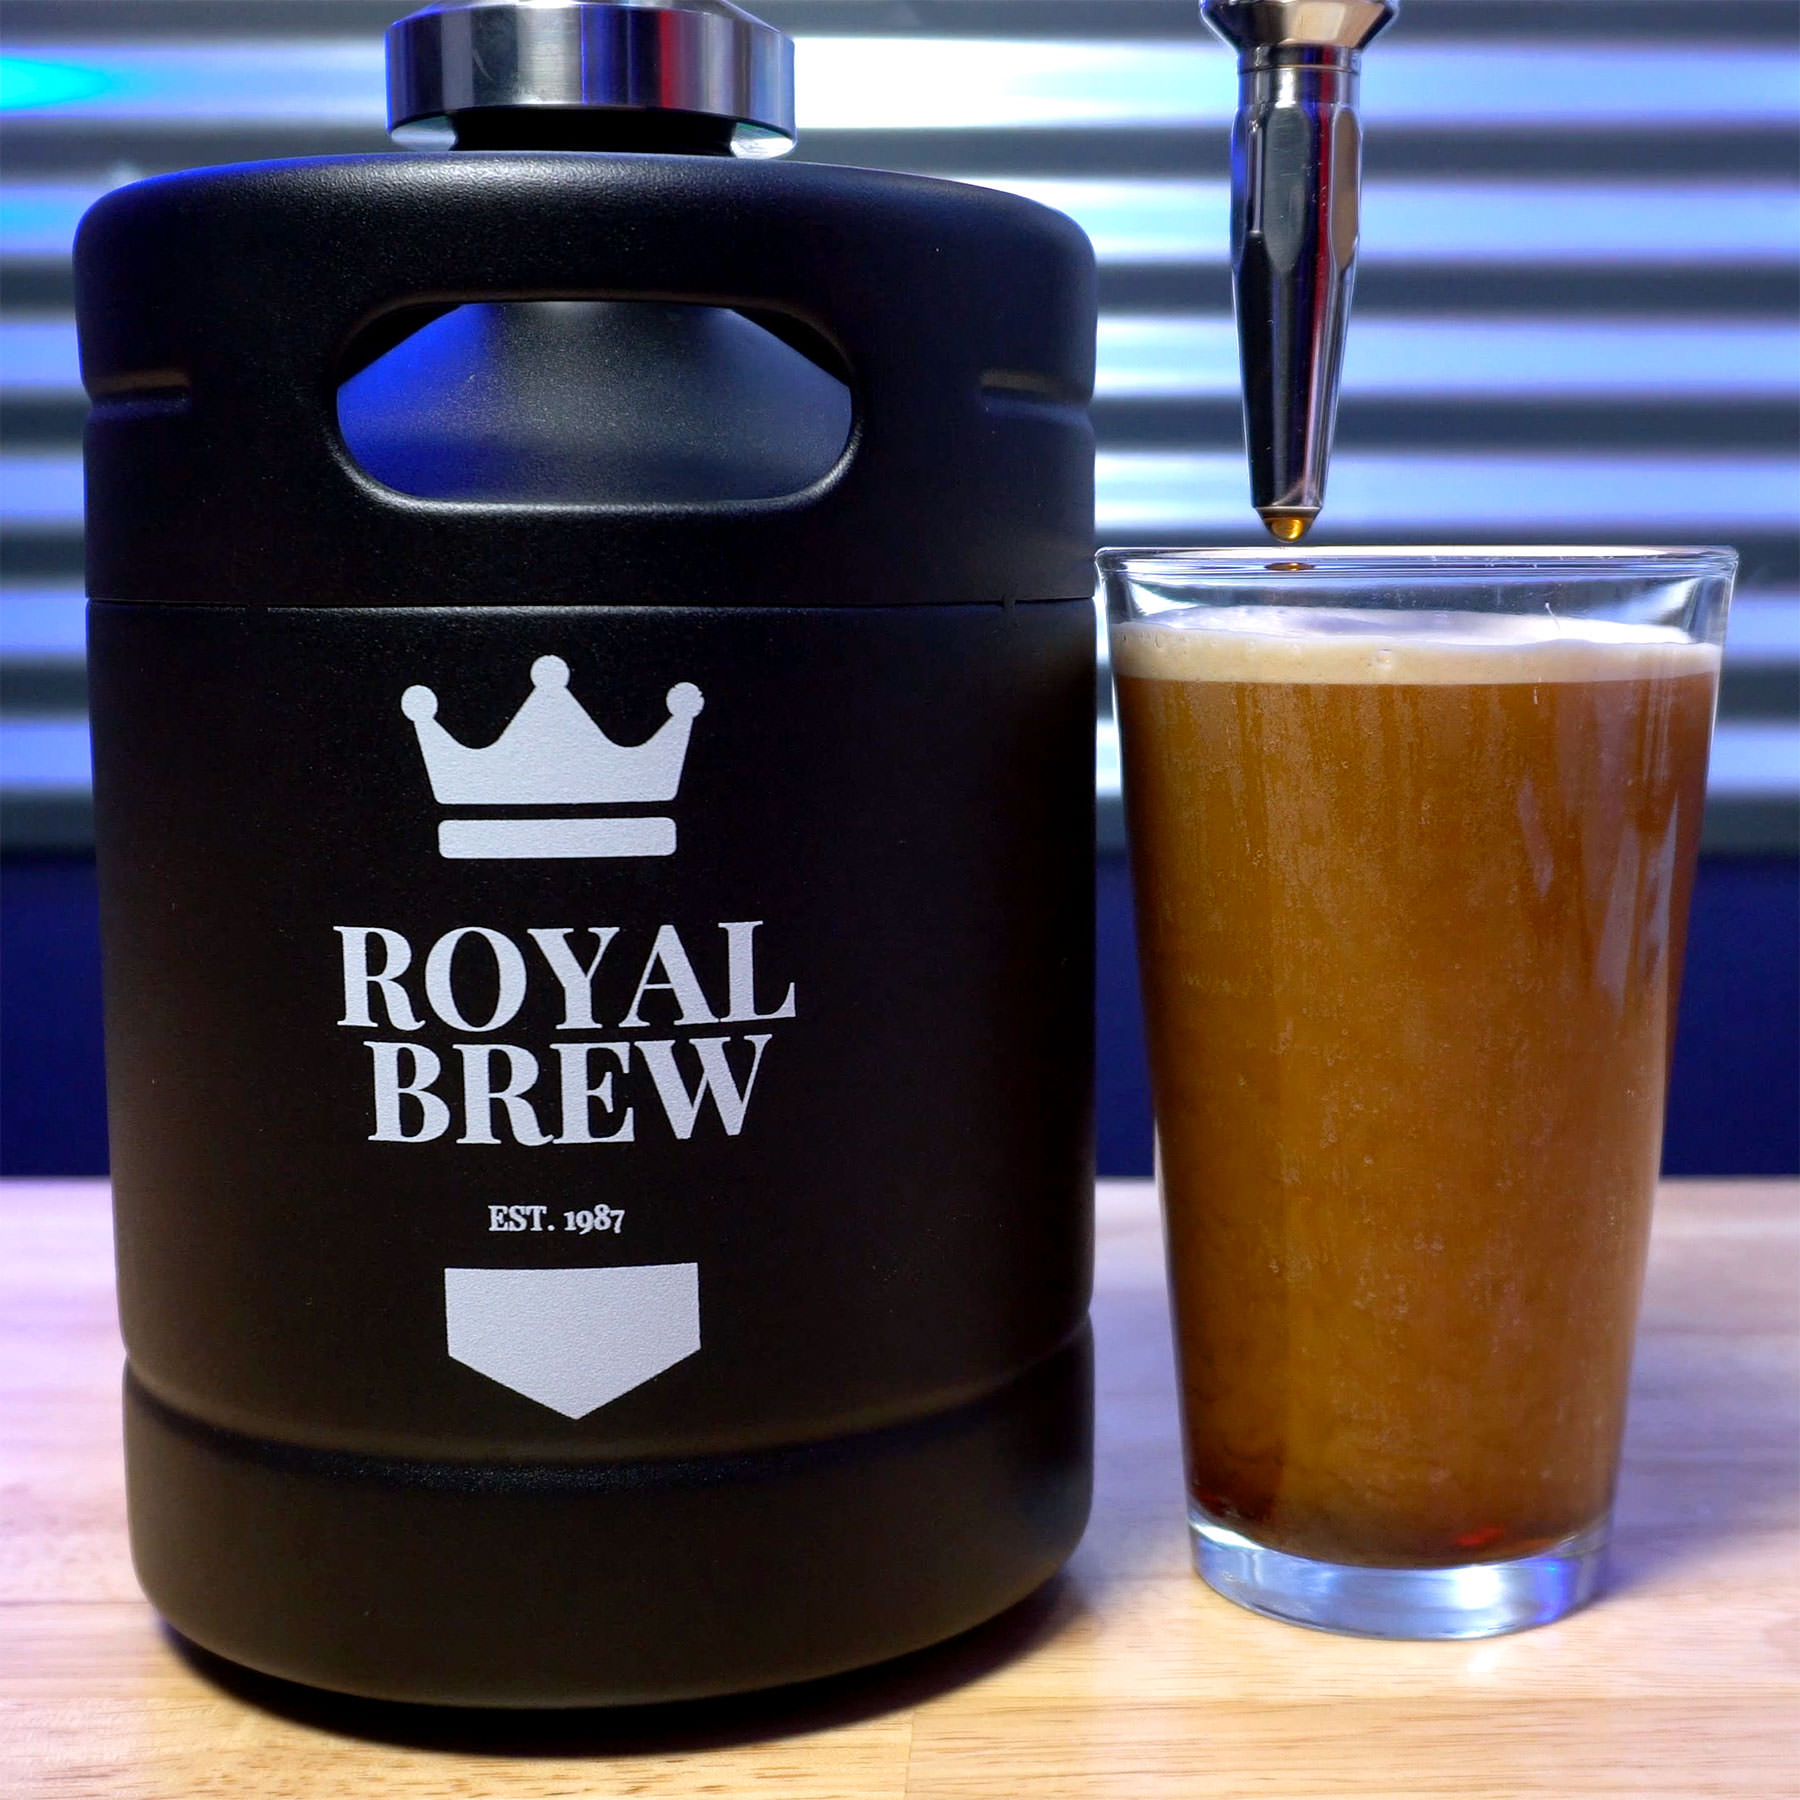 Royal Brew Nitro Cold Brew Coffee Maker Review - Chris Duke